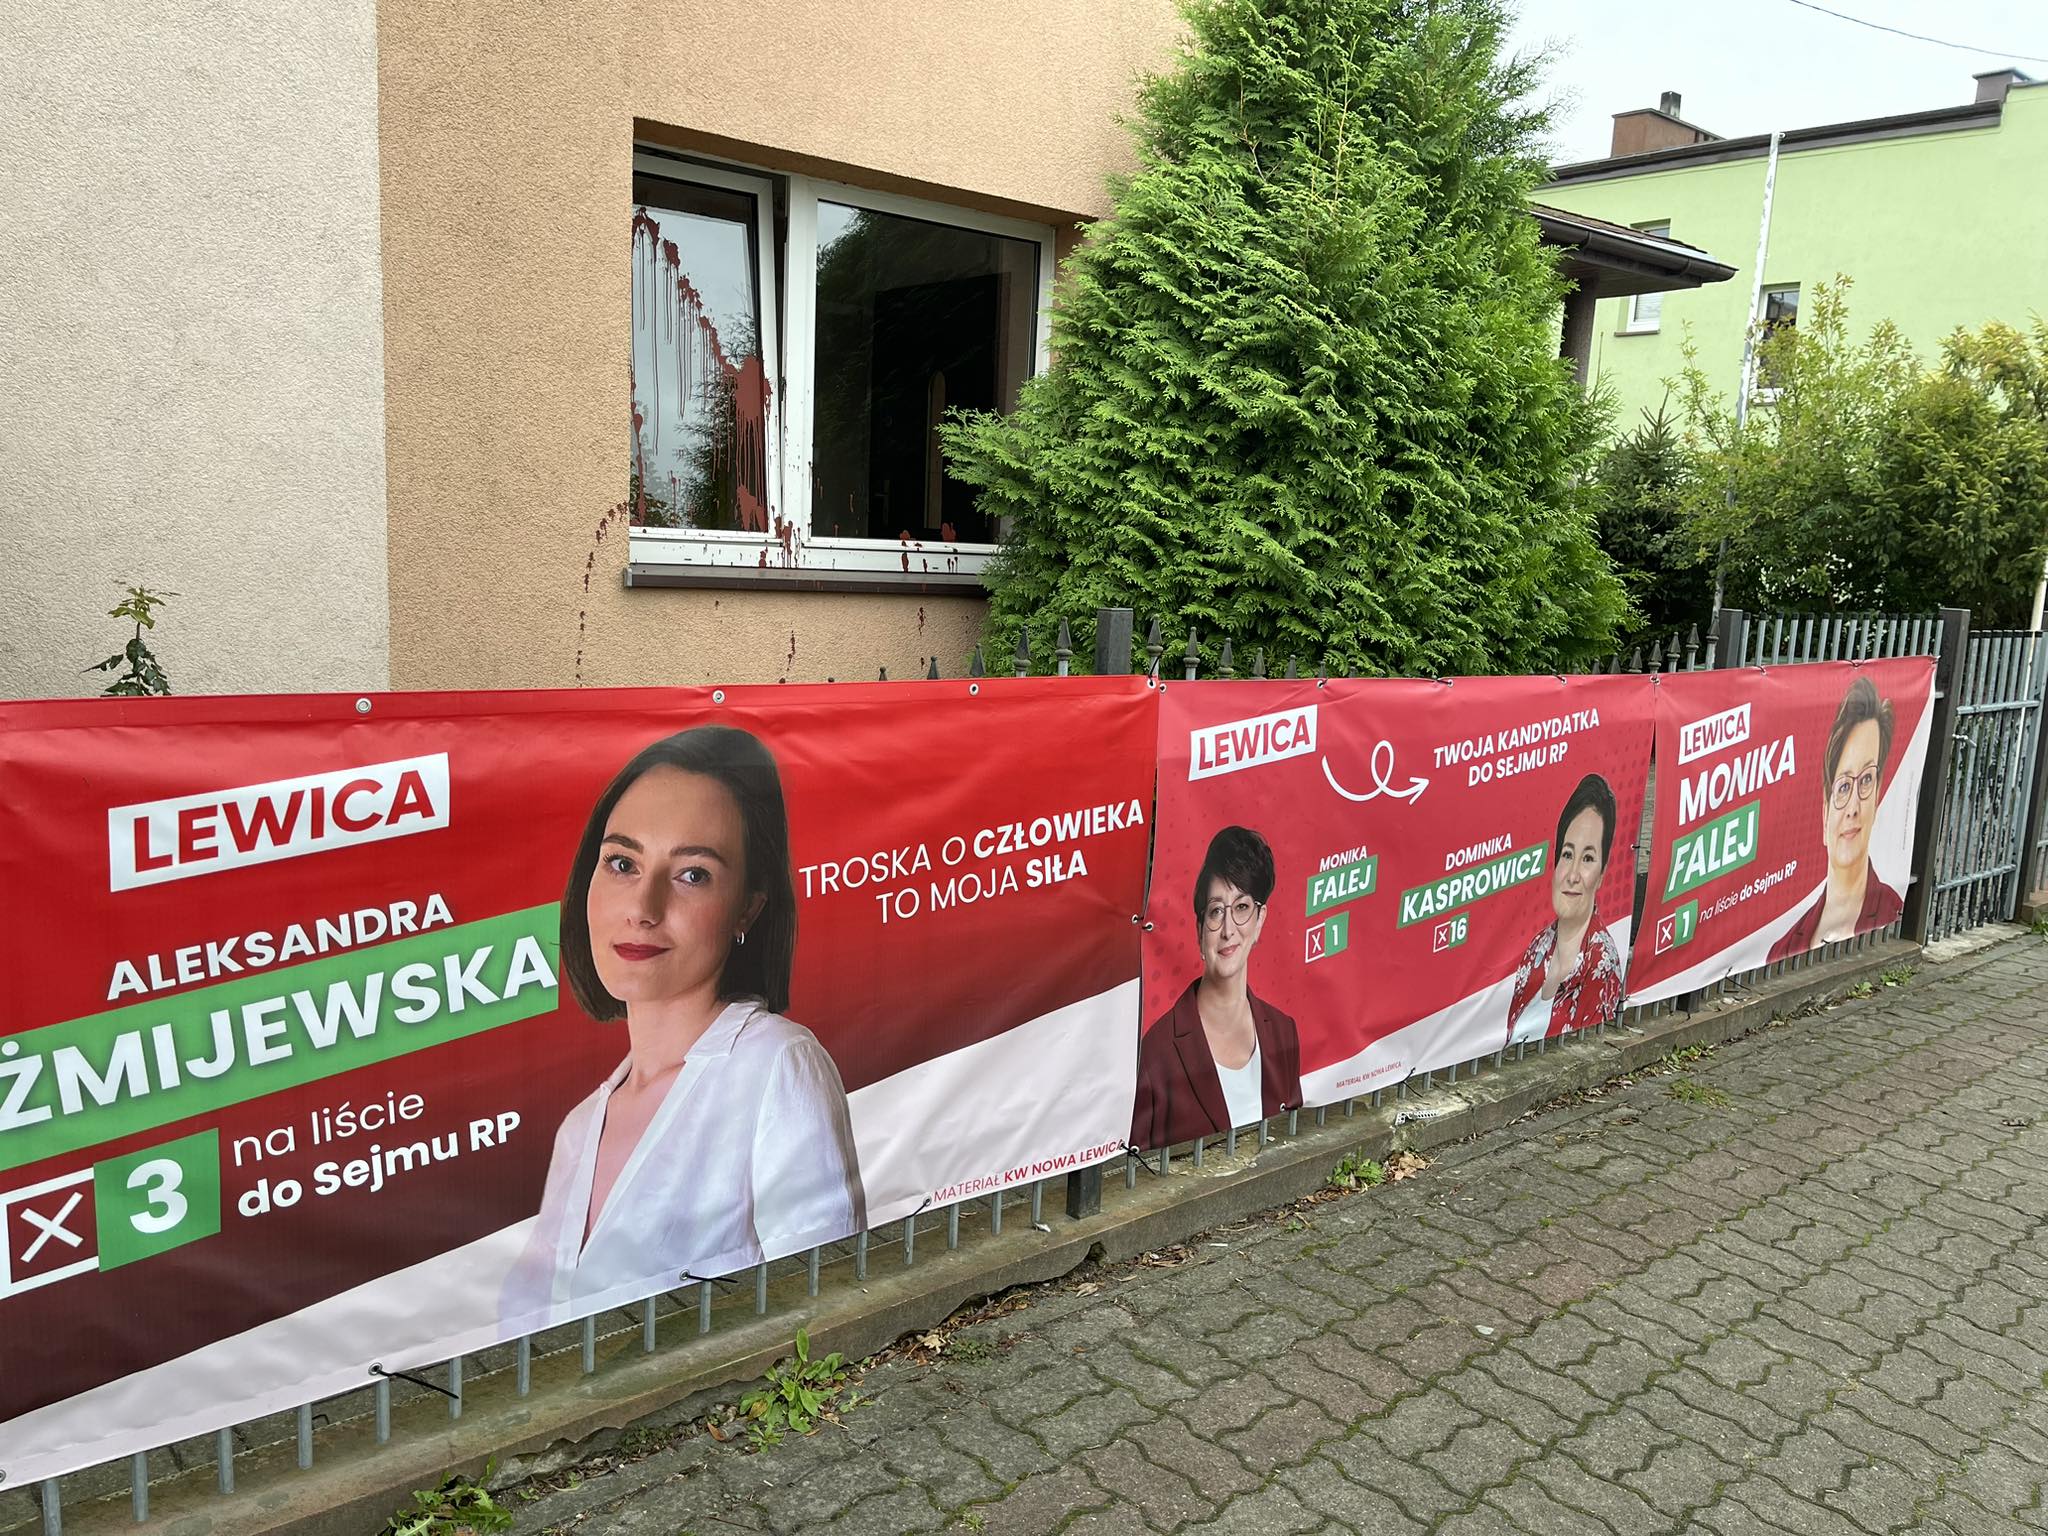 Płot przy domu, na którym wiszą czerwone banery kilku kandydatek Lewicy do Sejmu